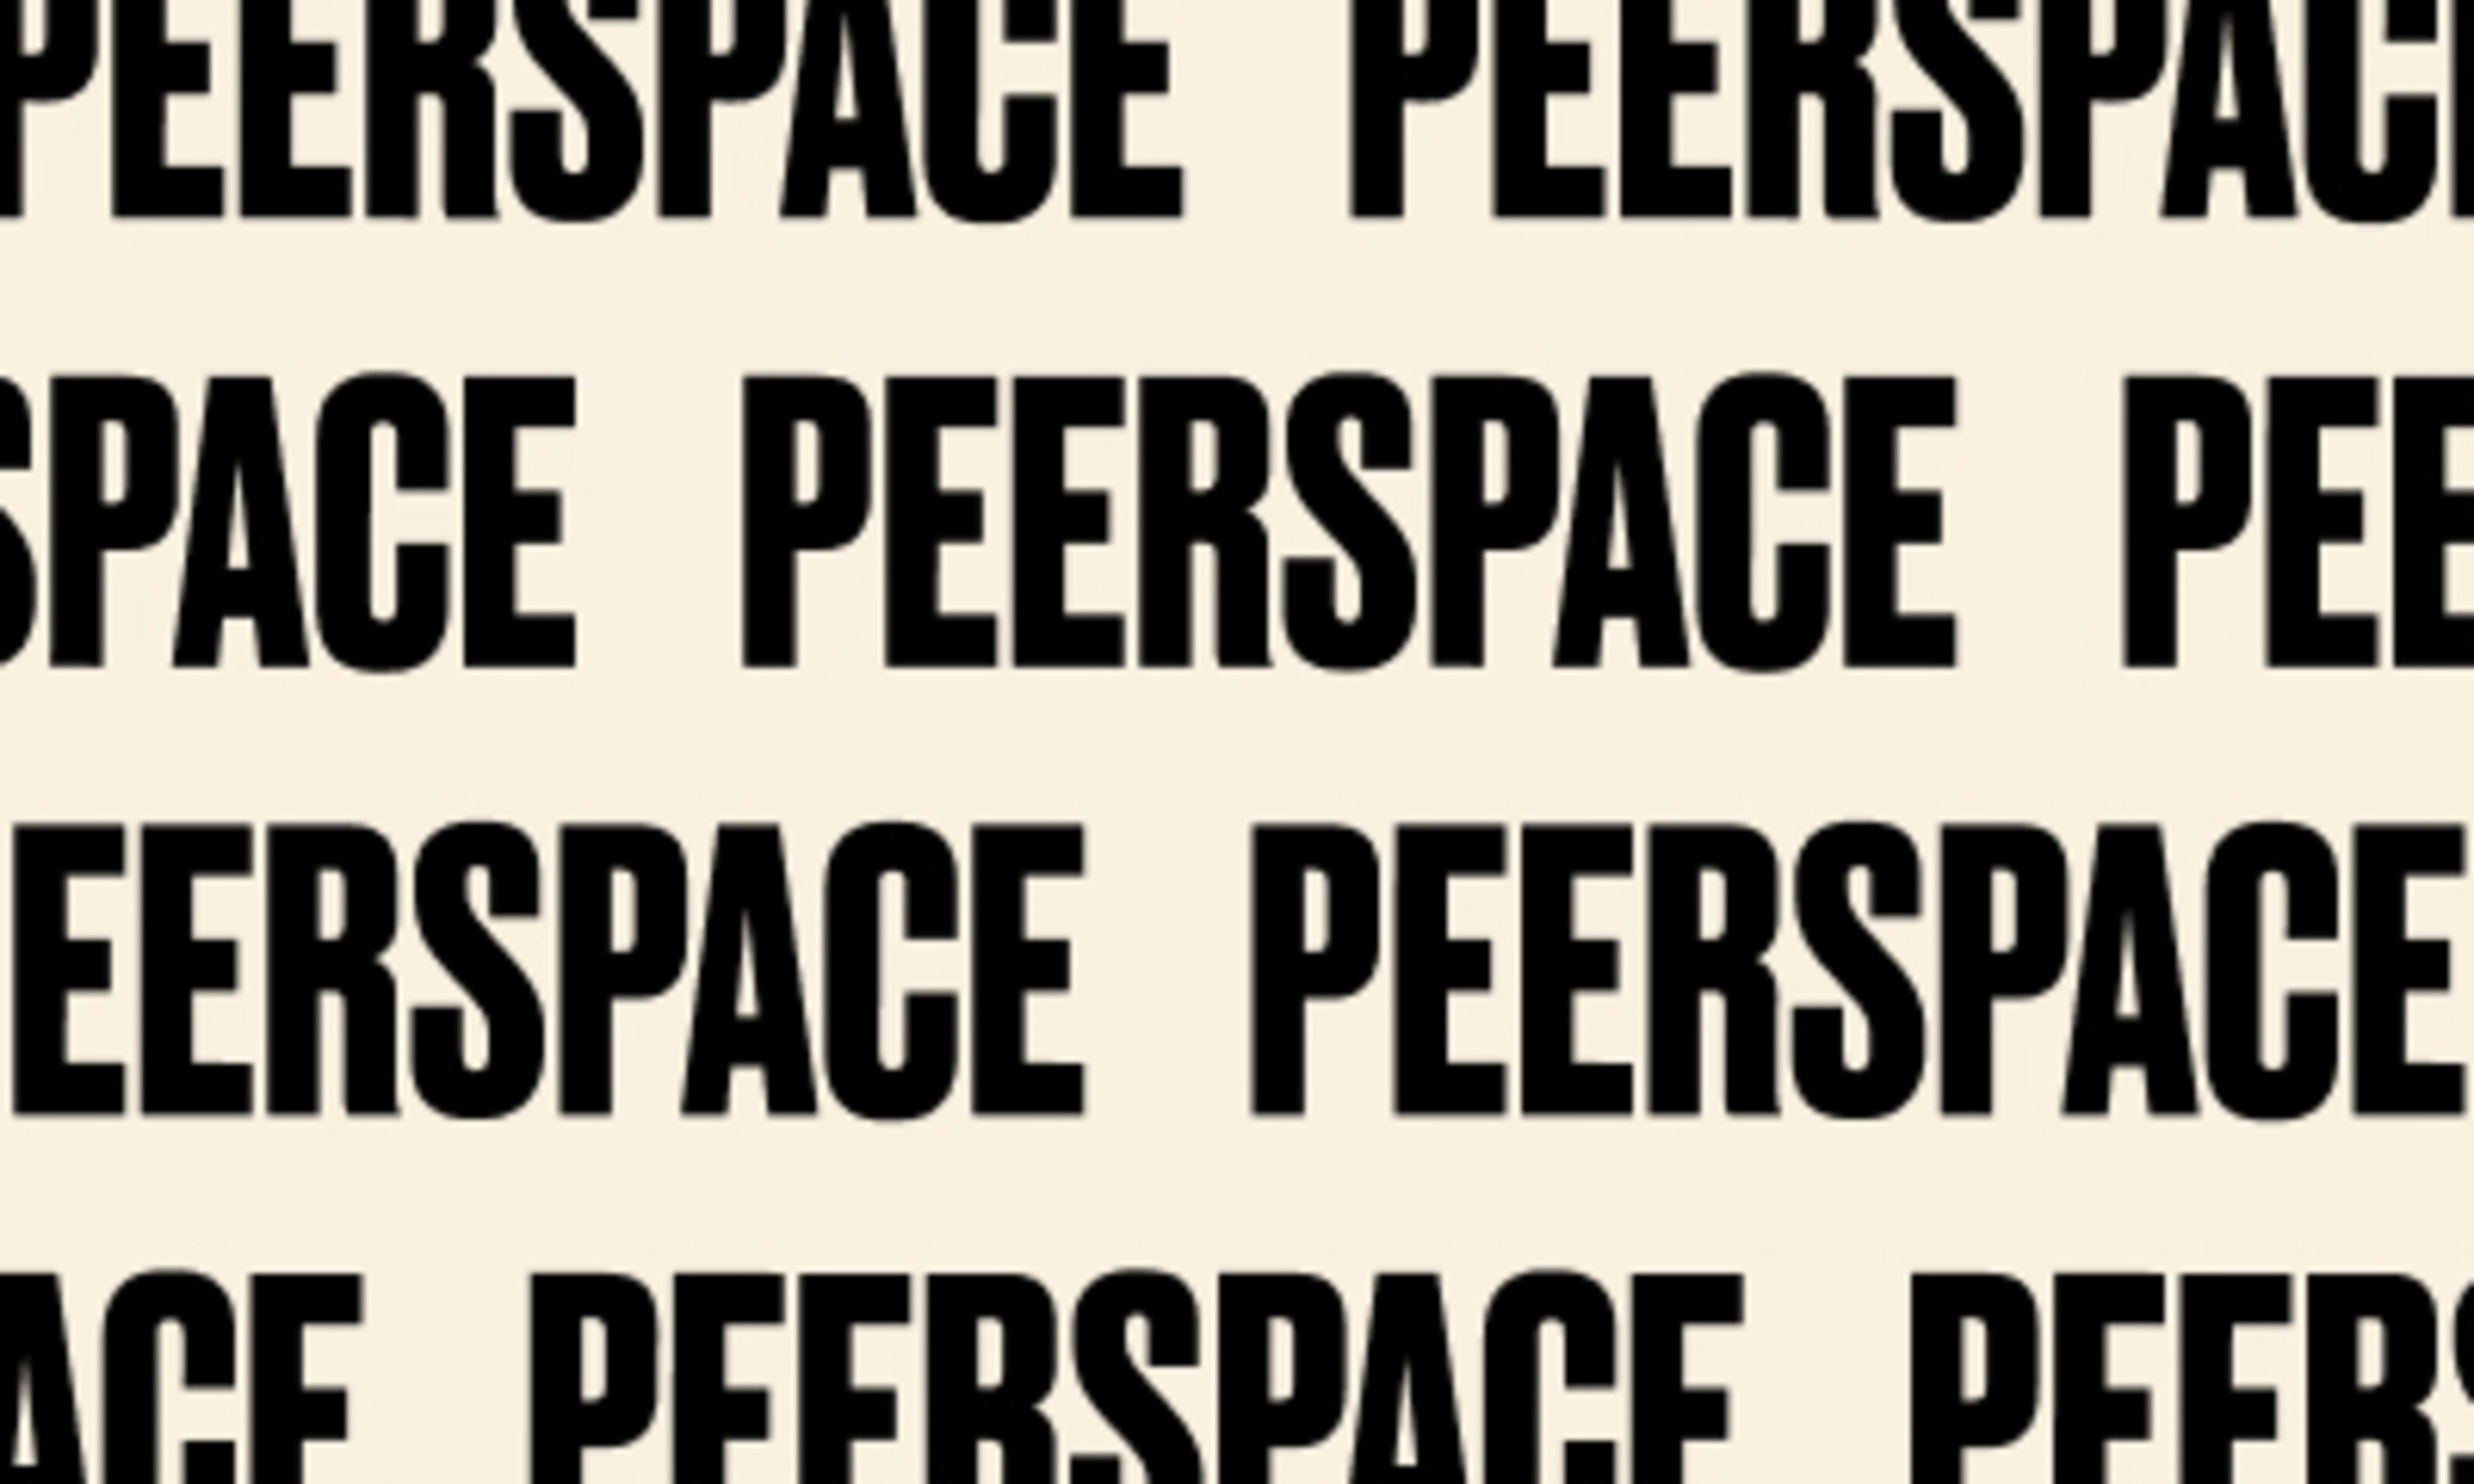 Le nouveau Peerspace : là où toutes vos idées créatives prennent vie